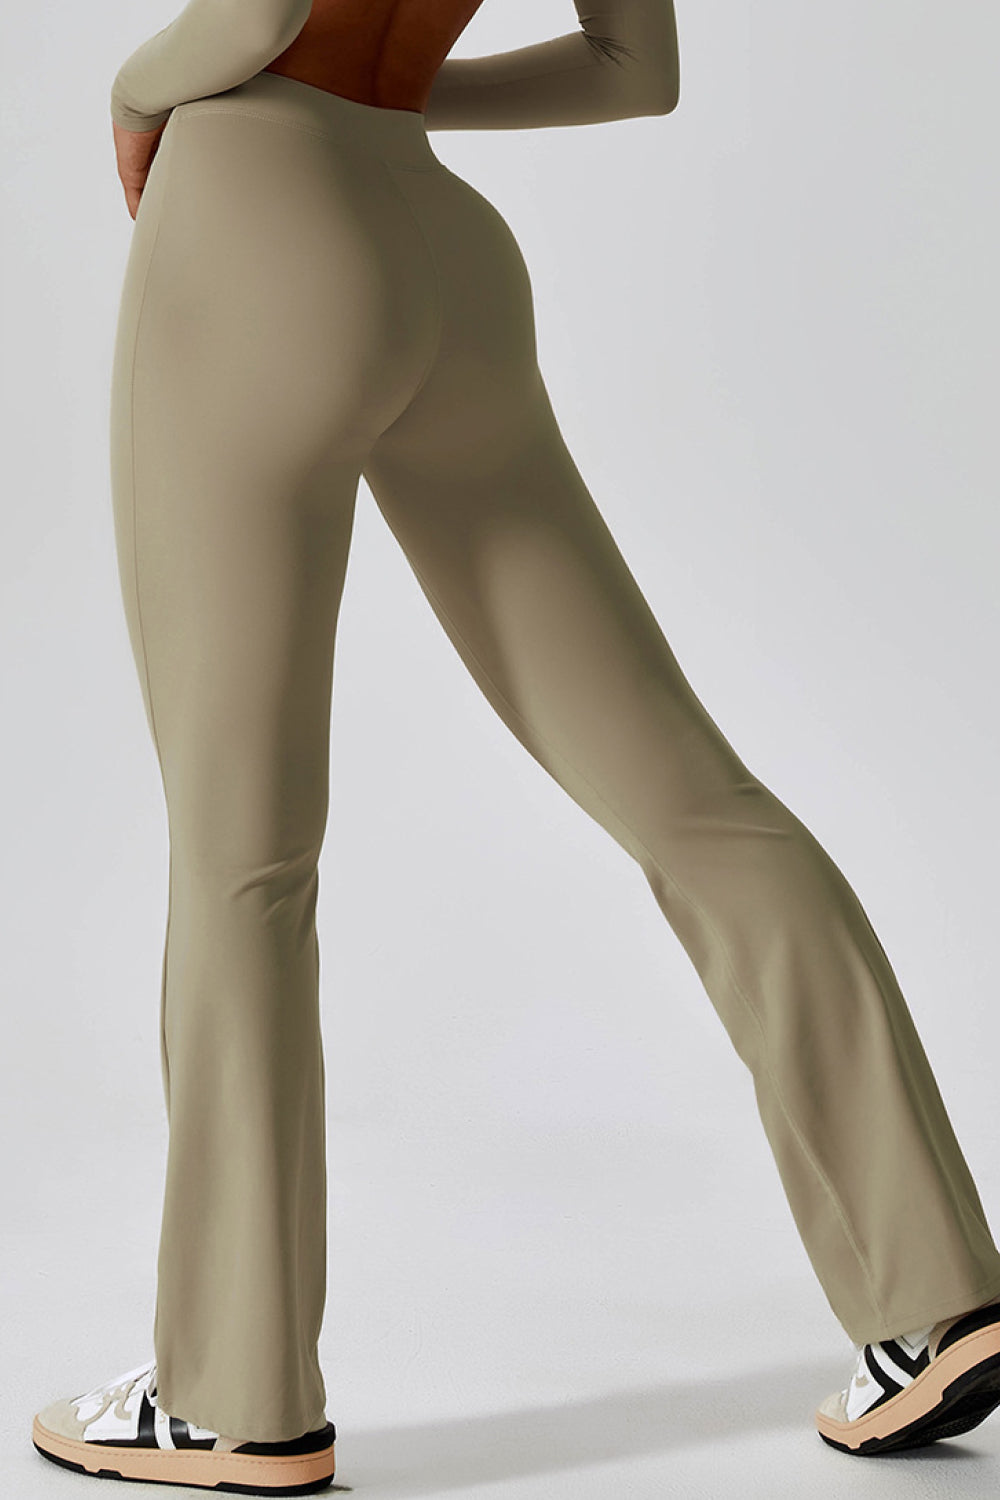 TrainTech Slim Fit High Waist Long Leggings - FleekGoddess